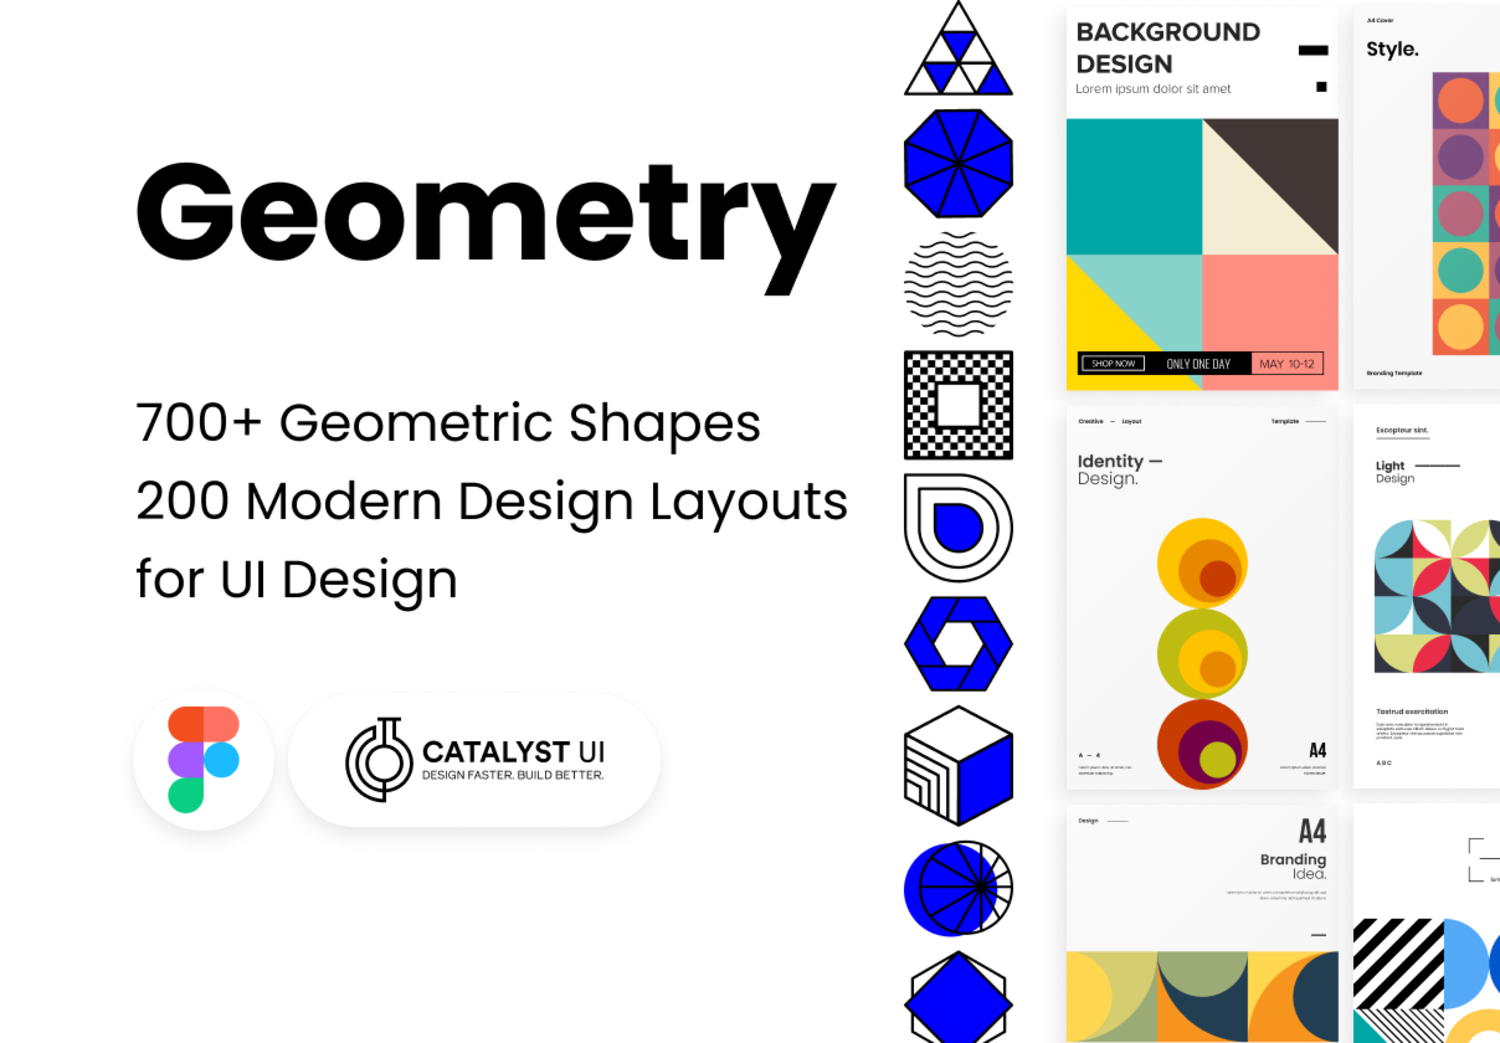 5132 抽象几何形状和平面海报设计模板素材 Geometric Design Elements Bundle@GOOODME.COM